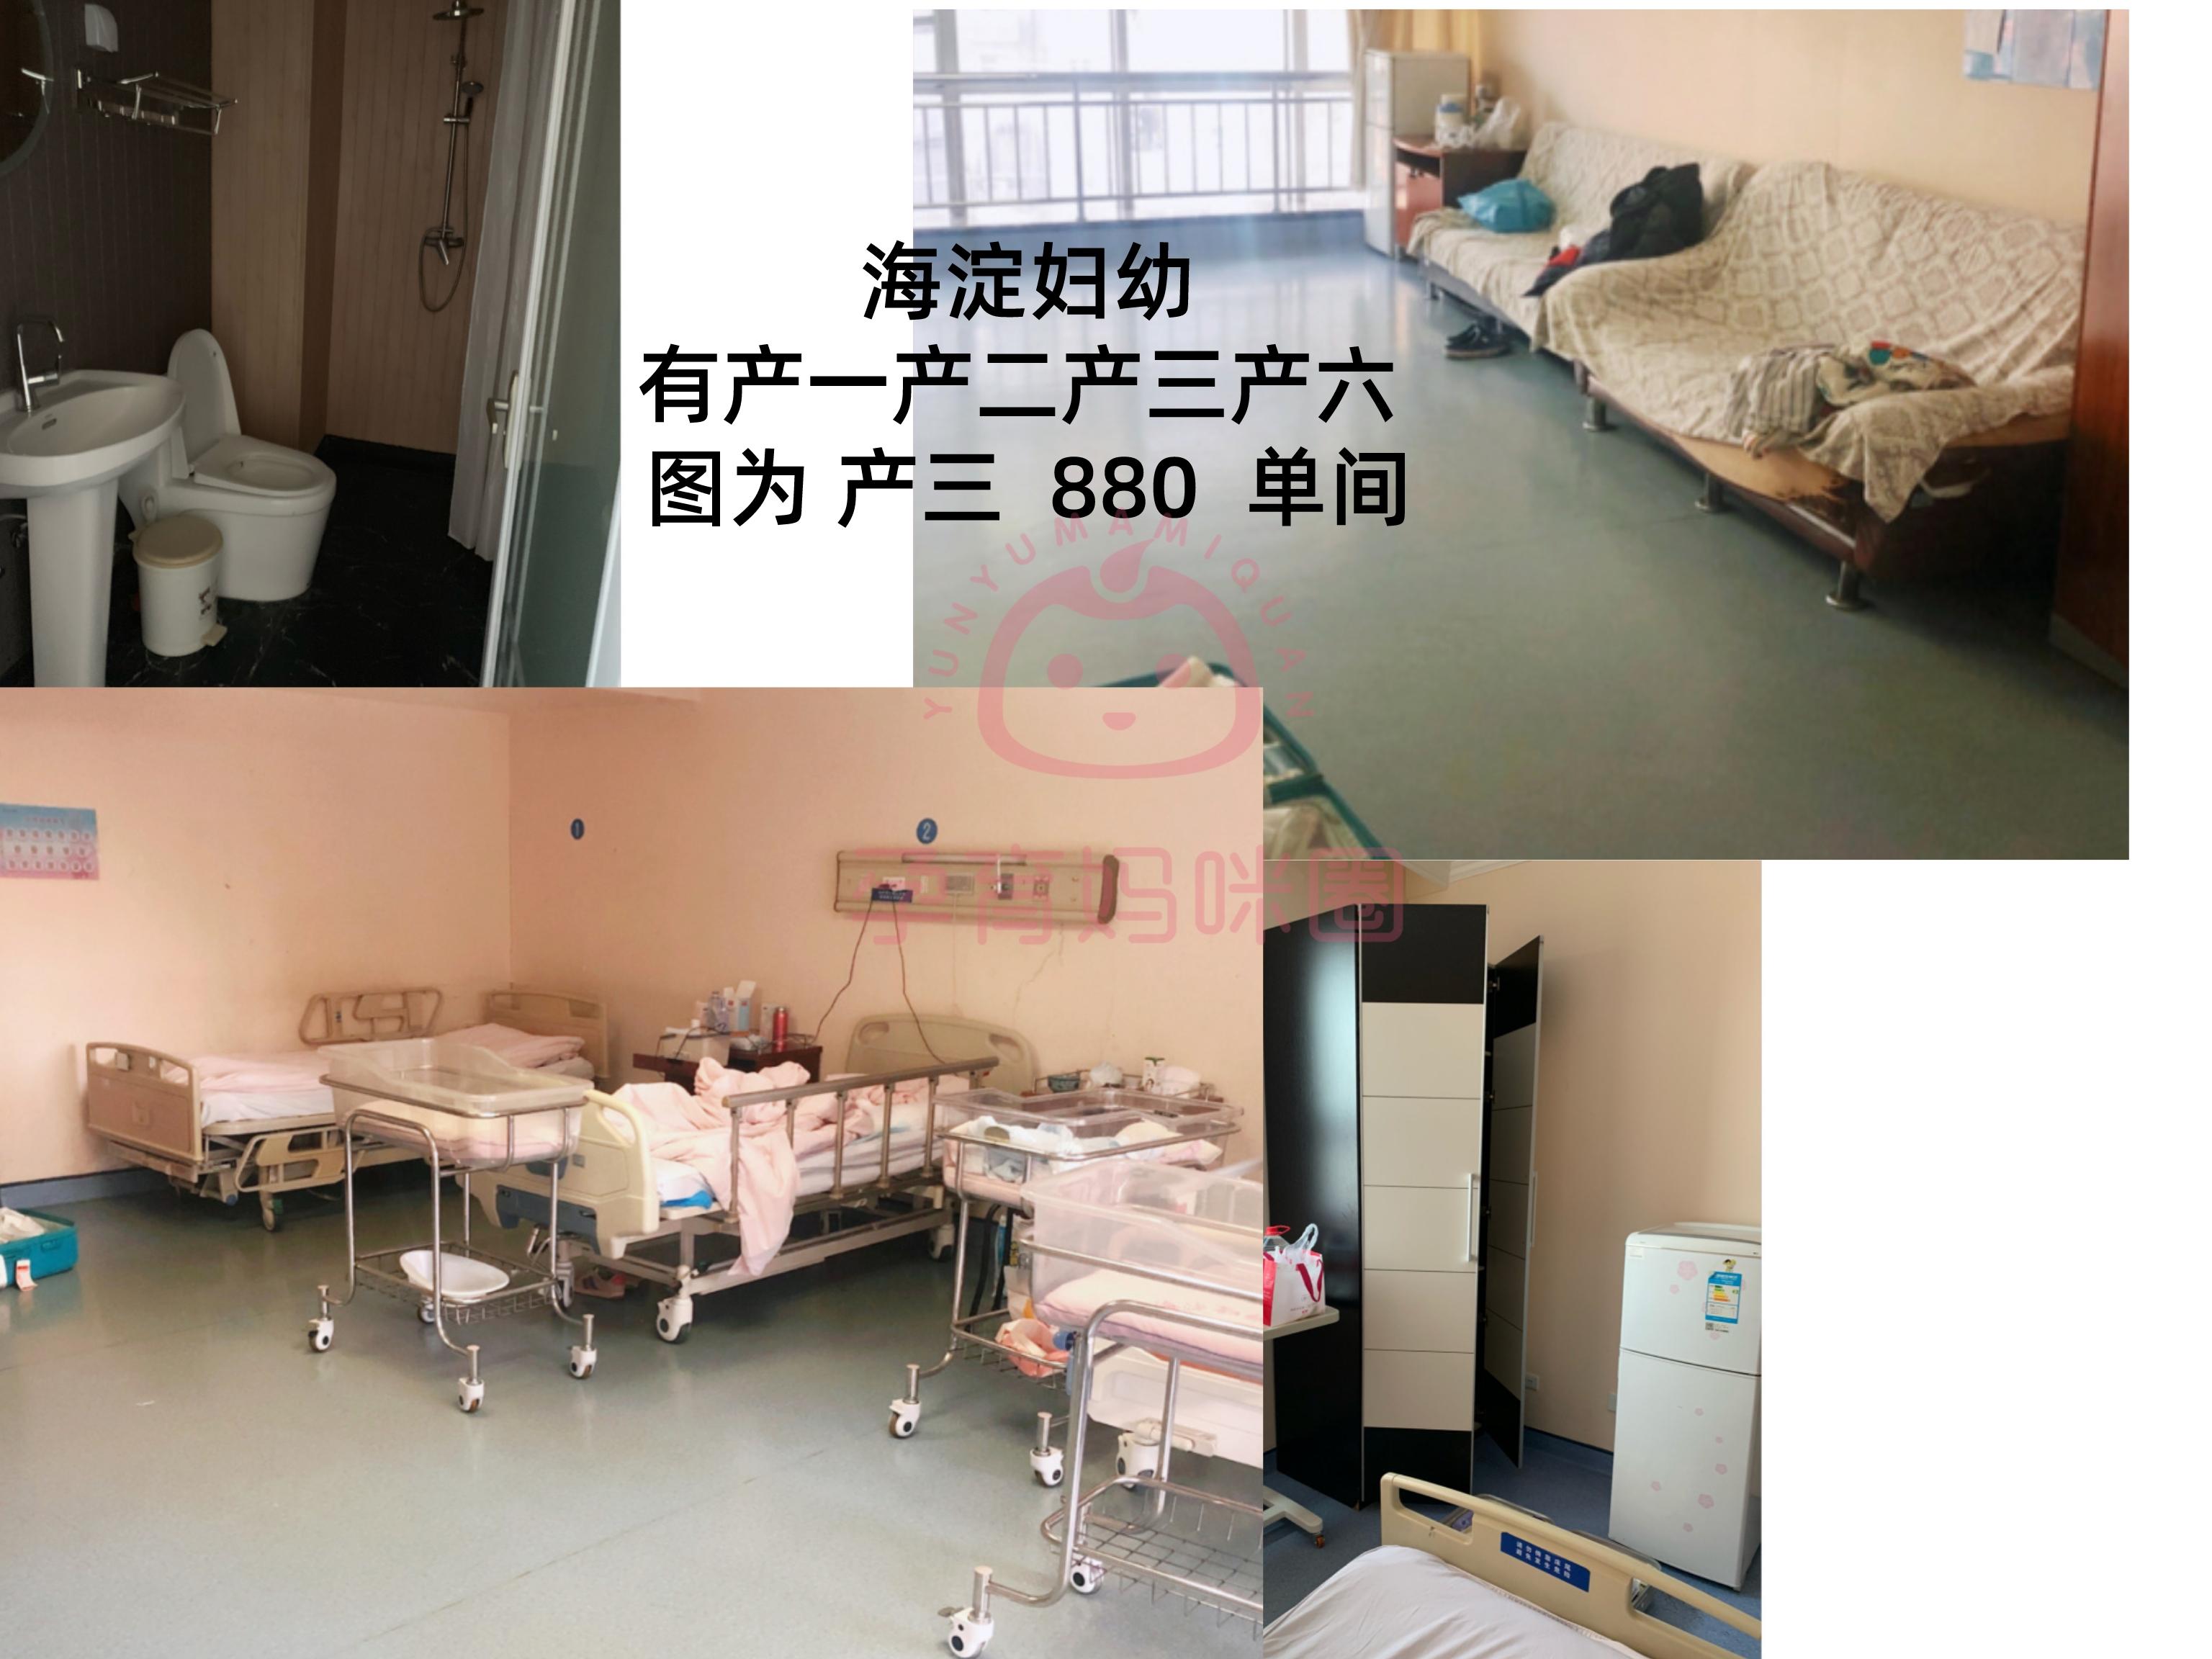 包含北京市海淀妇幼保健院10分钟搞定，完全没有问题！的词条